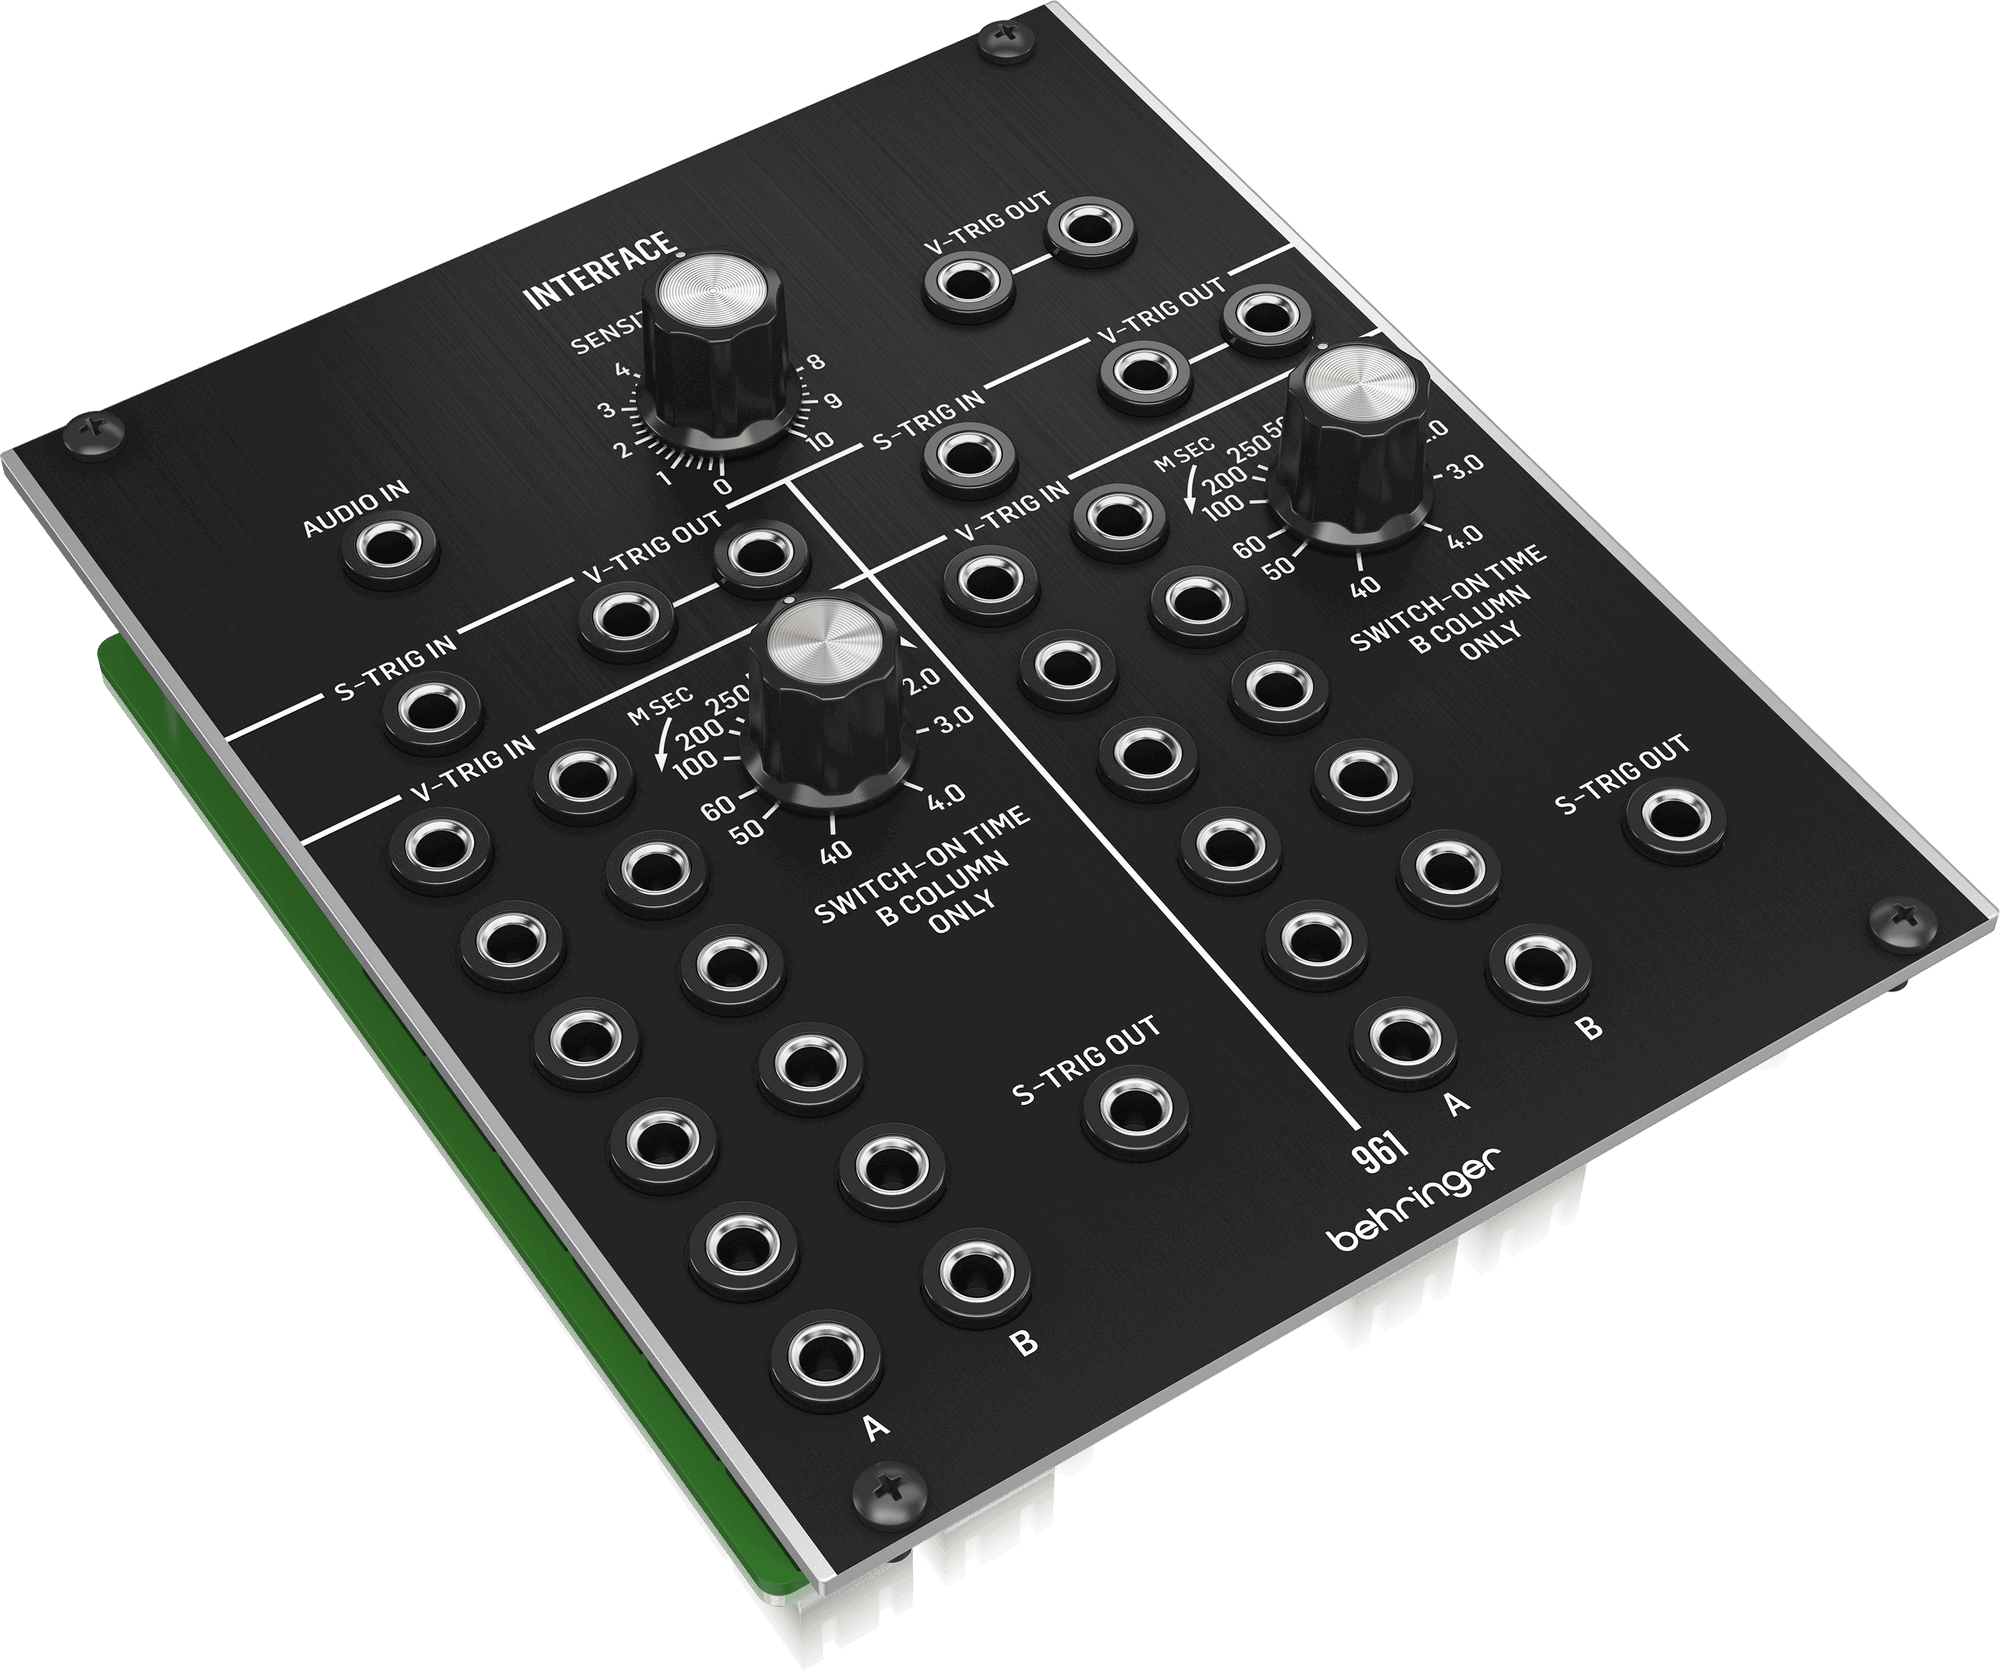 Behringer 961 Interface Analog Multi-channel Trigger Converter Eurorack Module | BEHRINGER , Zoso Music